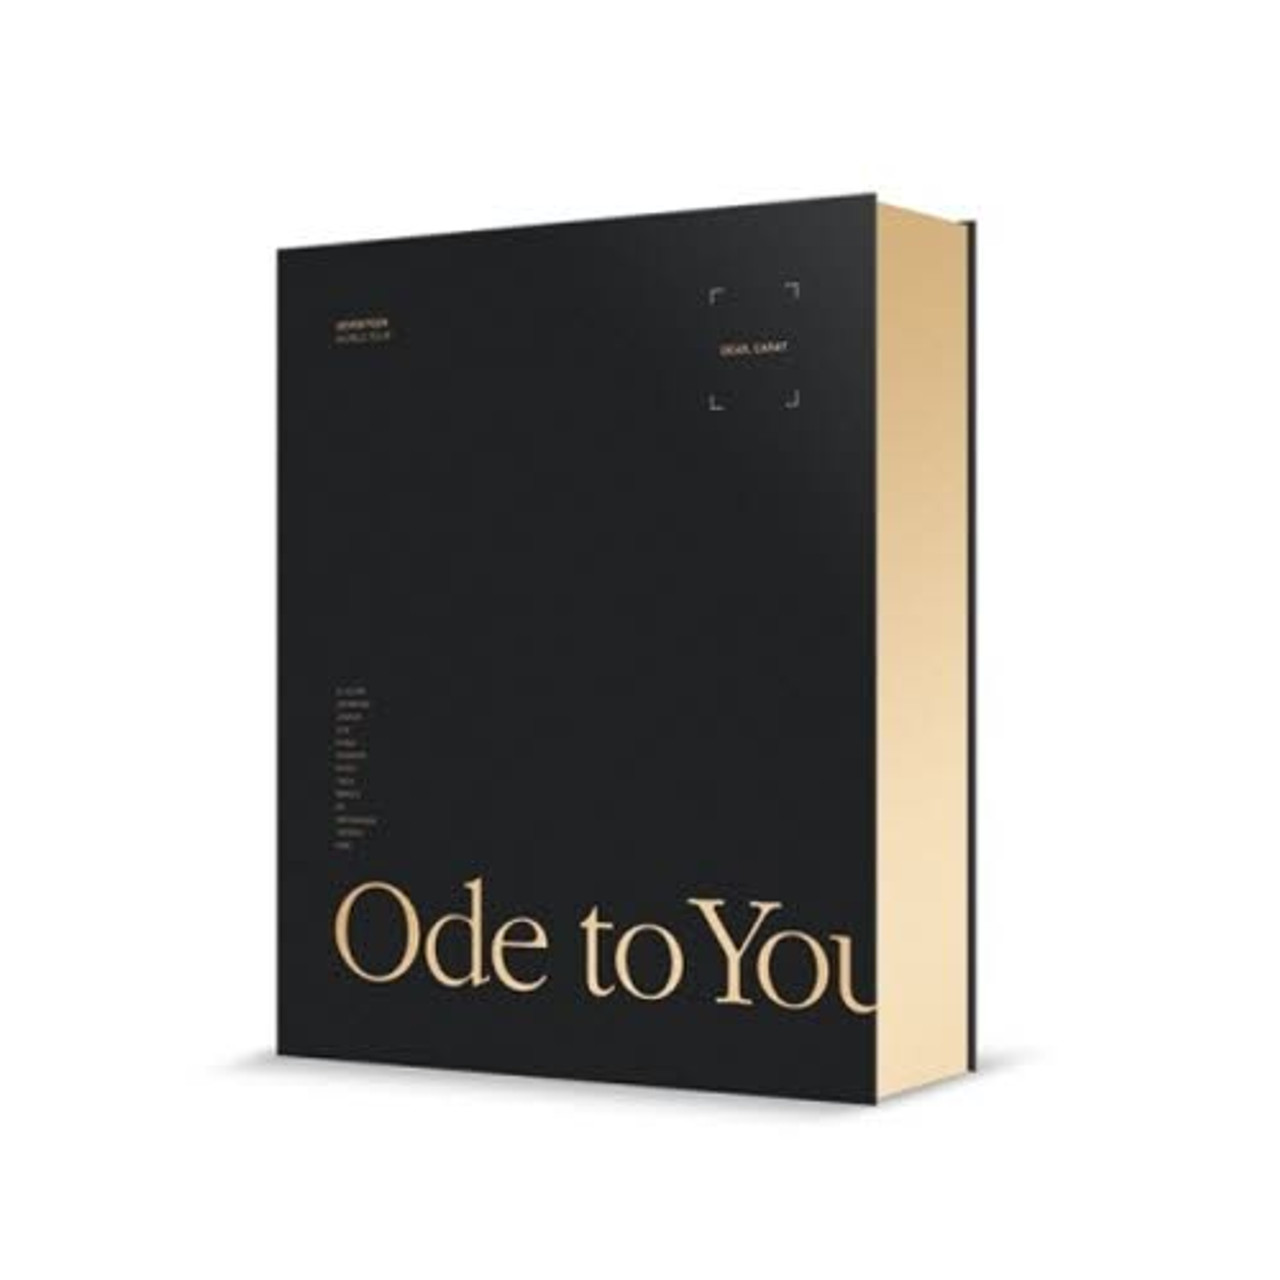 配送員設置 セブチ 2019 Ode to You DVD chauvin.com.ar